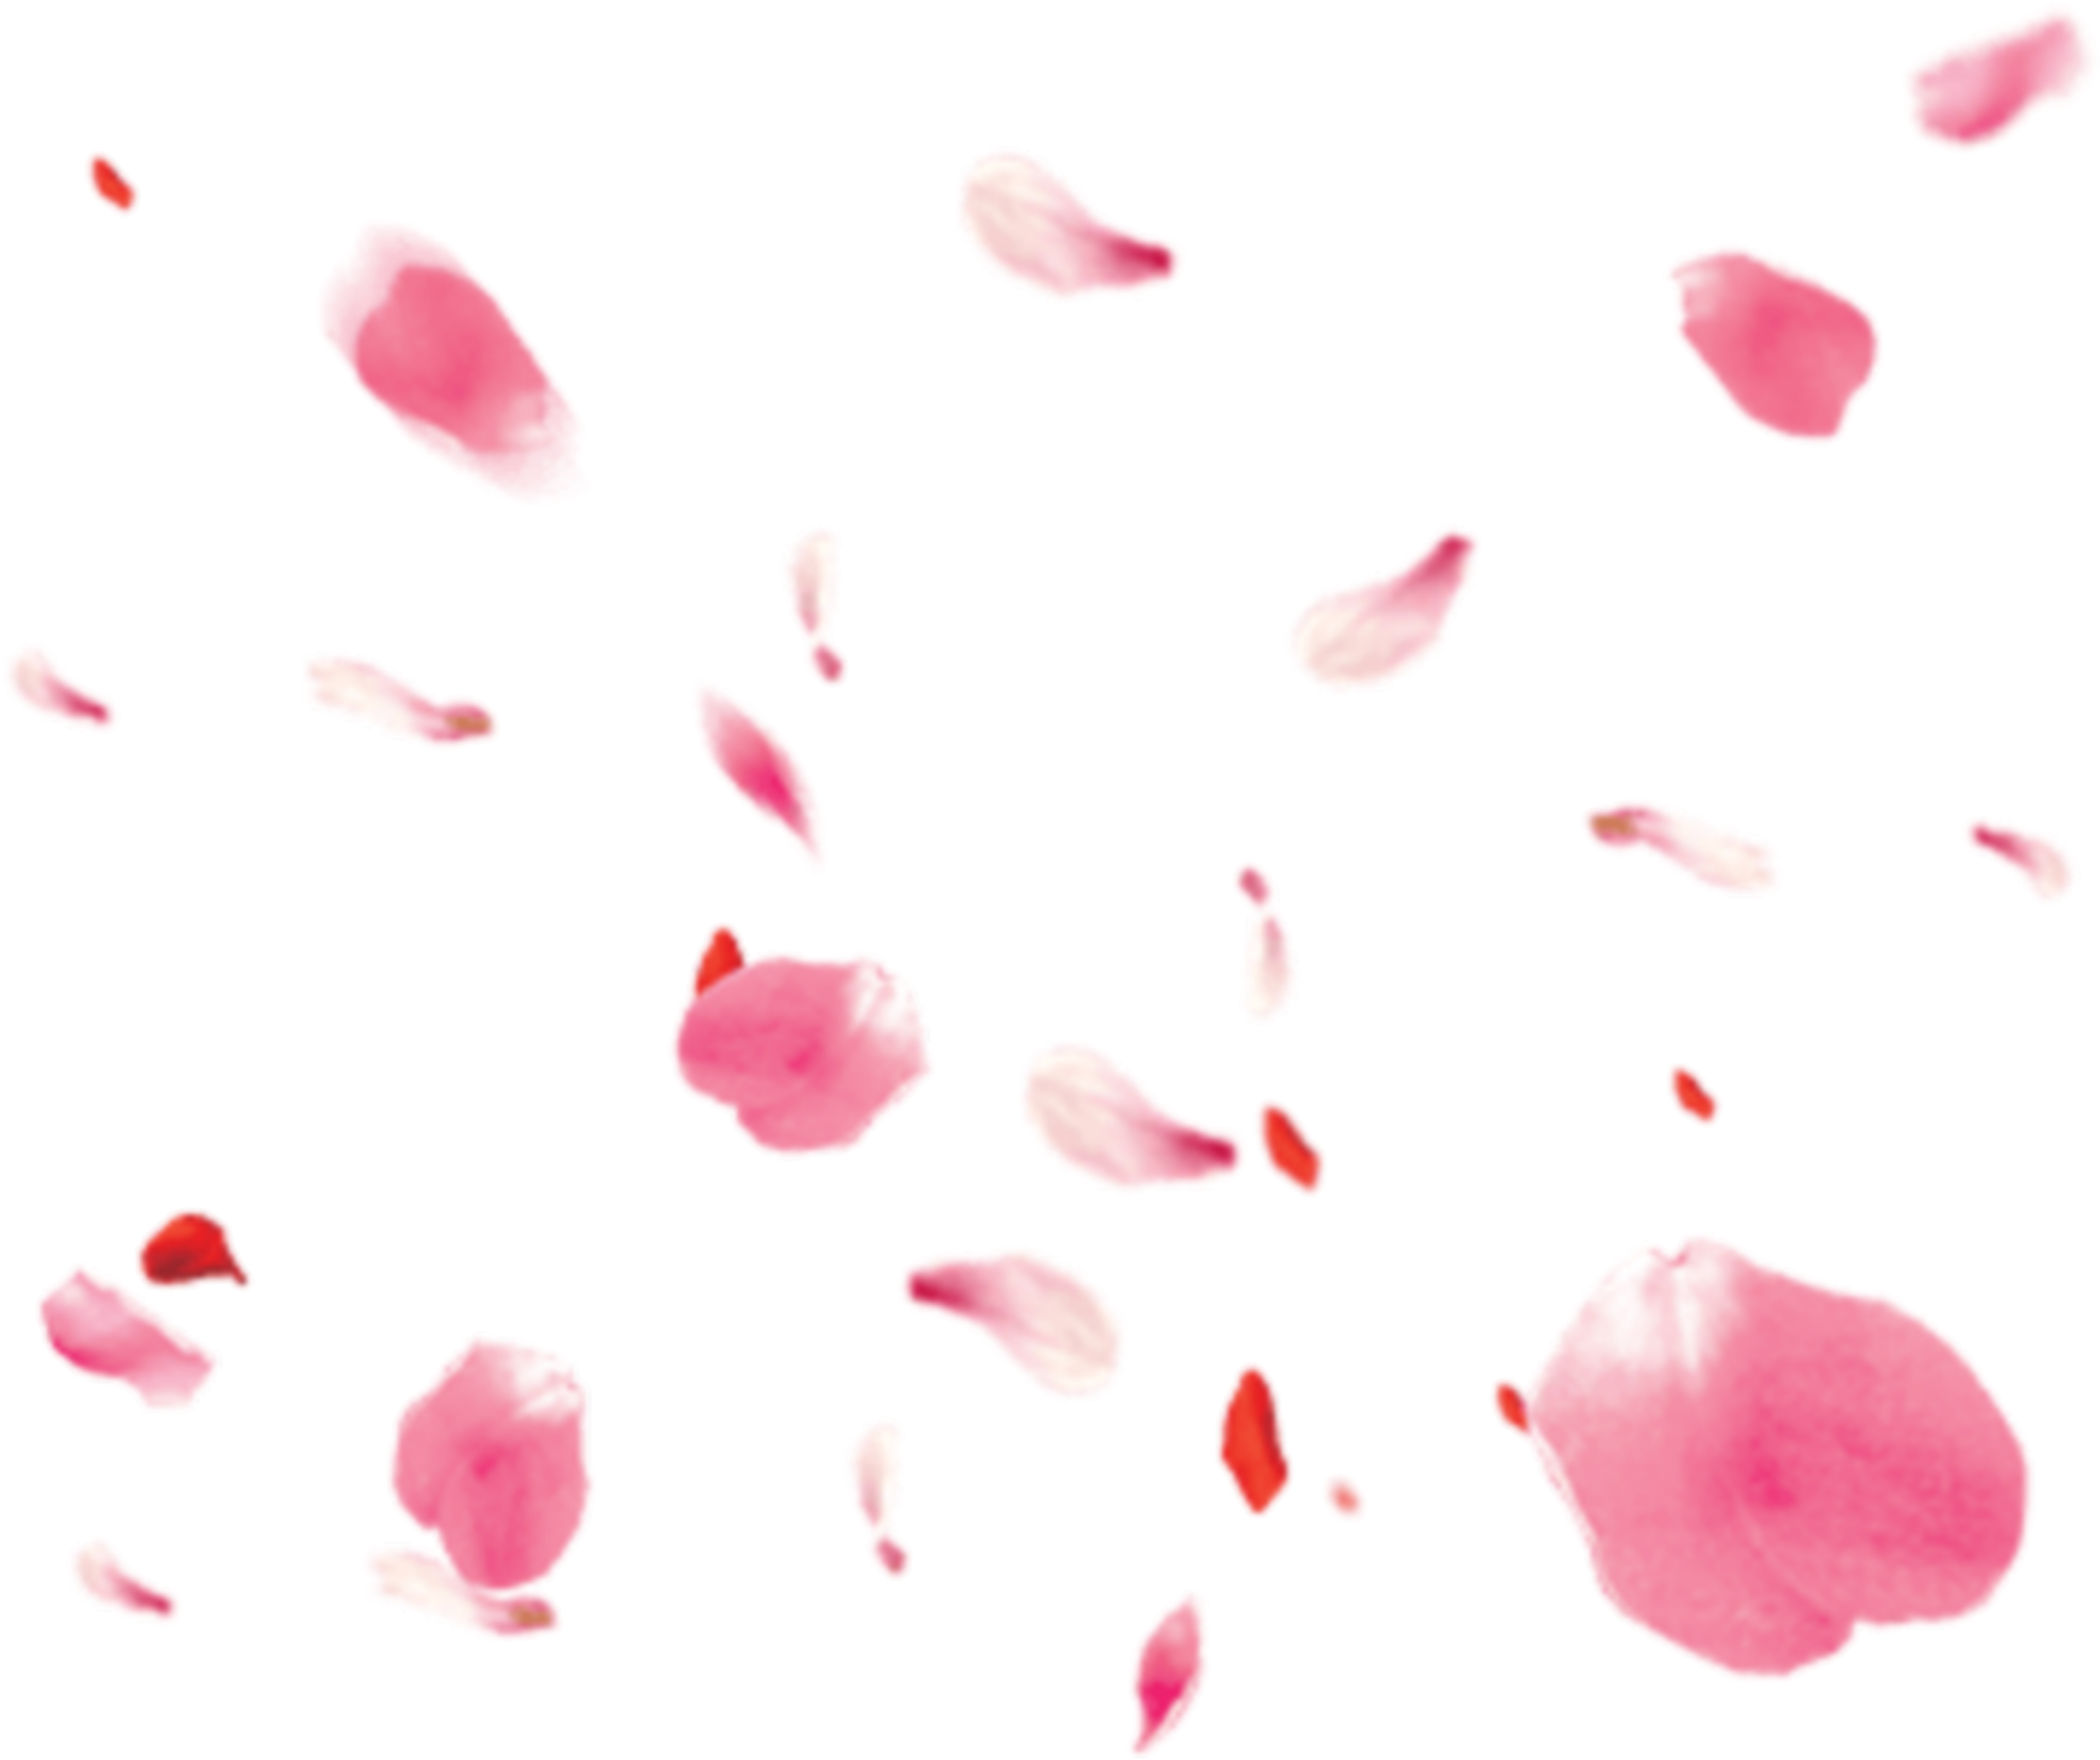 A Pink Petals Falling